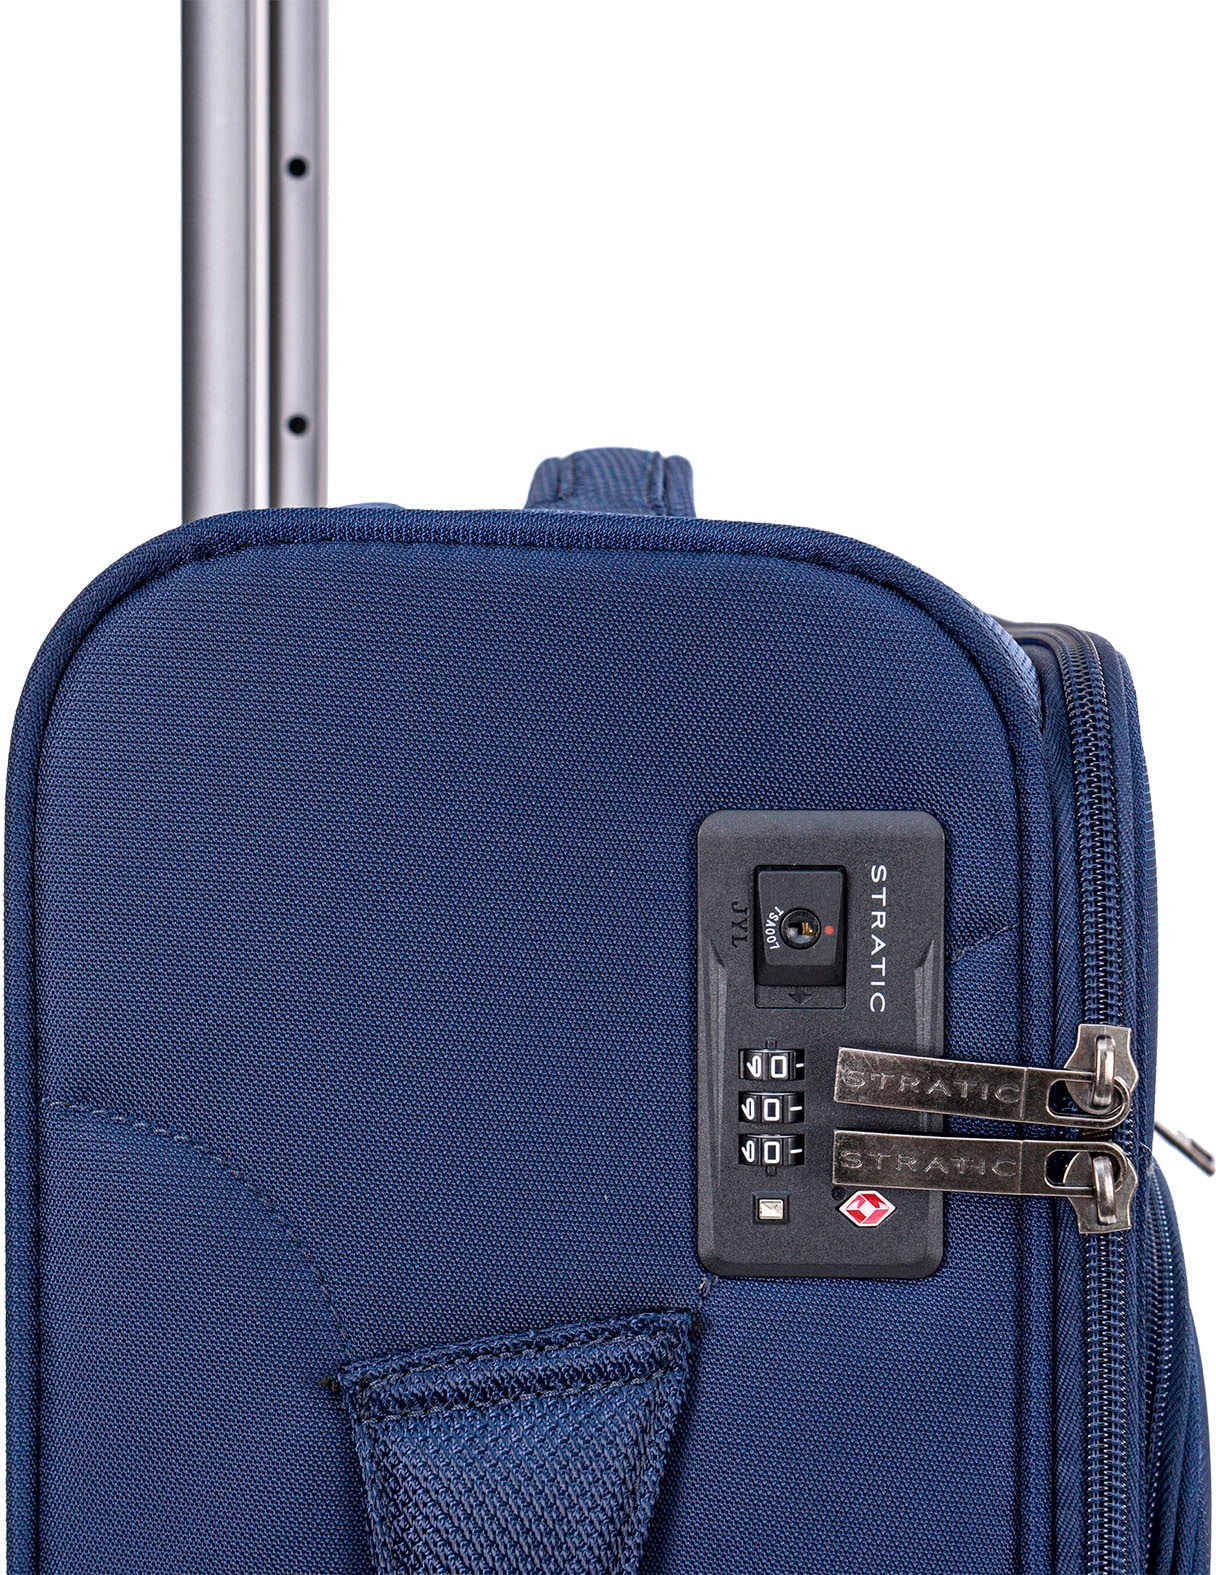 Stratic Weichgepäck-Trolley »Mix S, blue«, 4 Rollen, Handgepäck Reisekoffer Reisegepäck TSA-Zahlenschloss